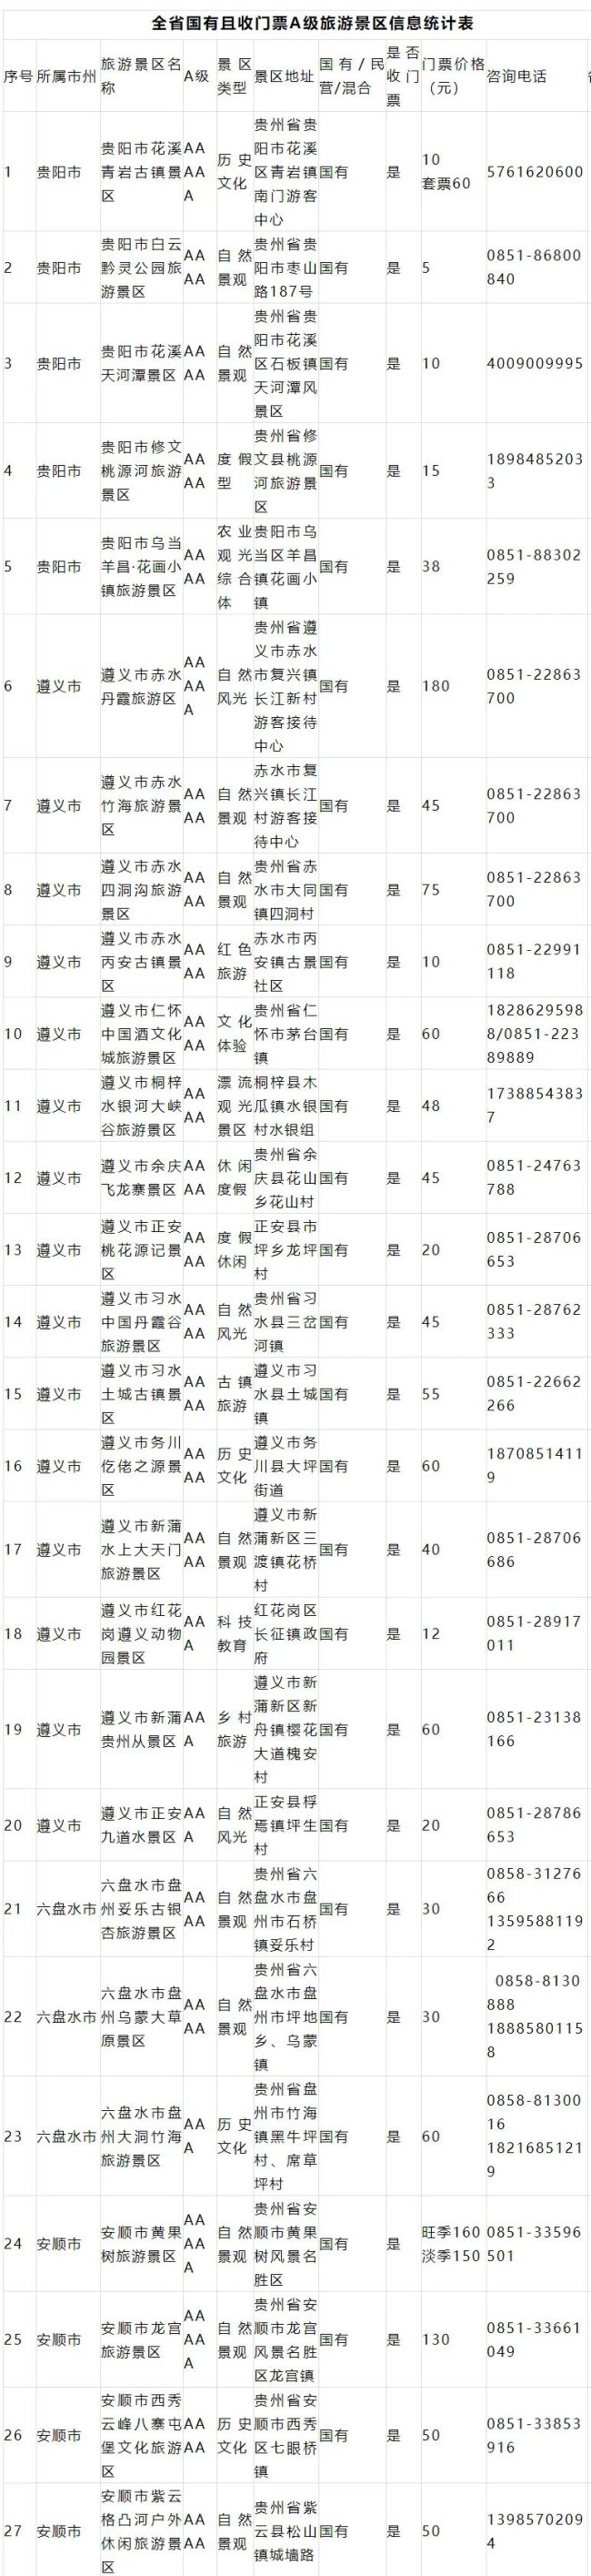 观光车等)是不免费的 据贵州省文化和旅游厅官网消息显示,贵州国有且